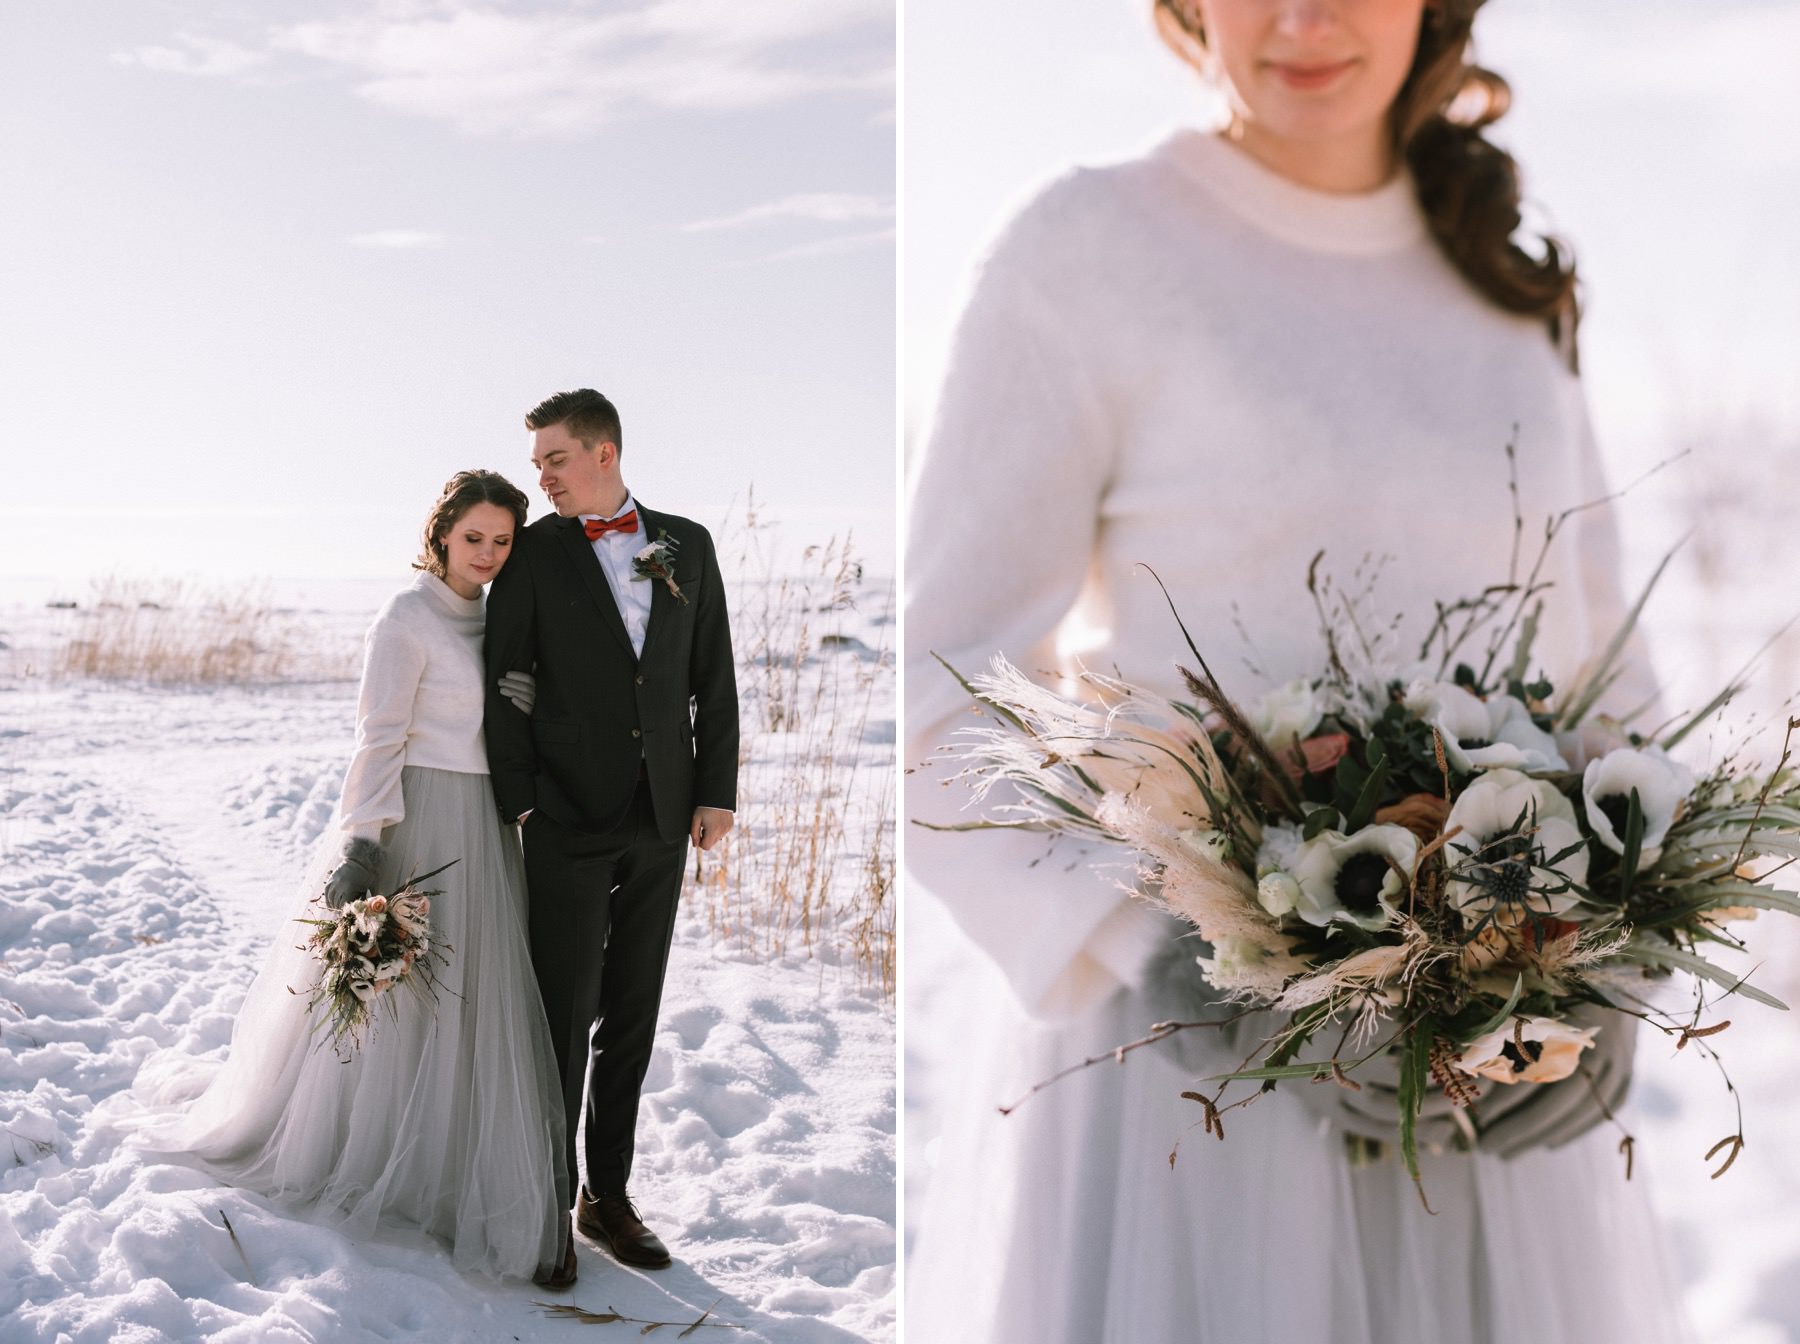 Winter wedding in Finland